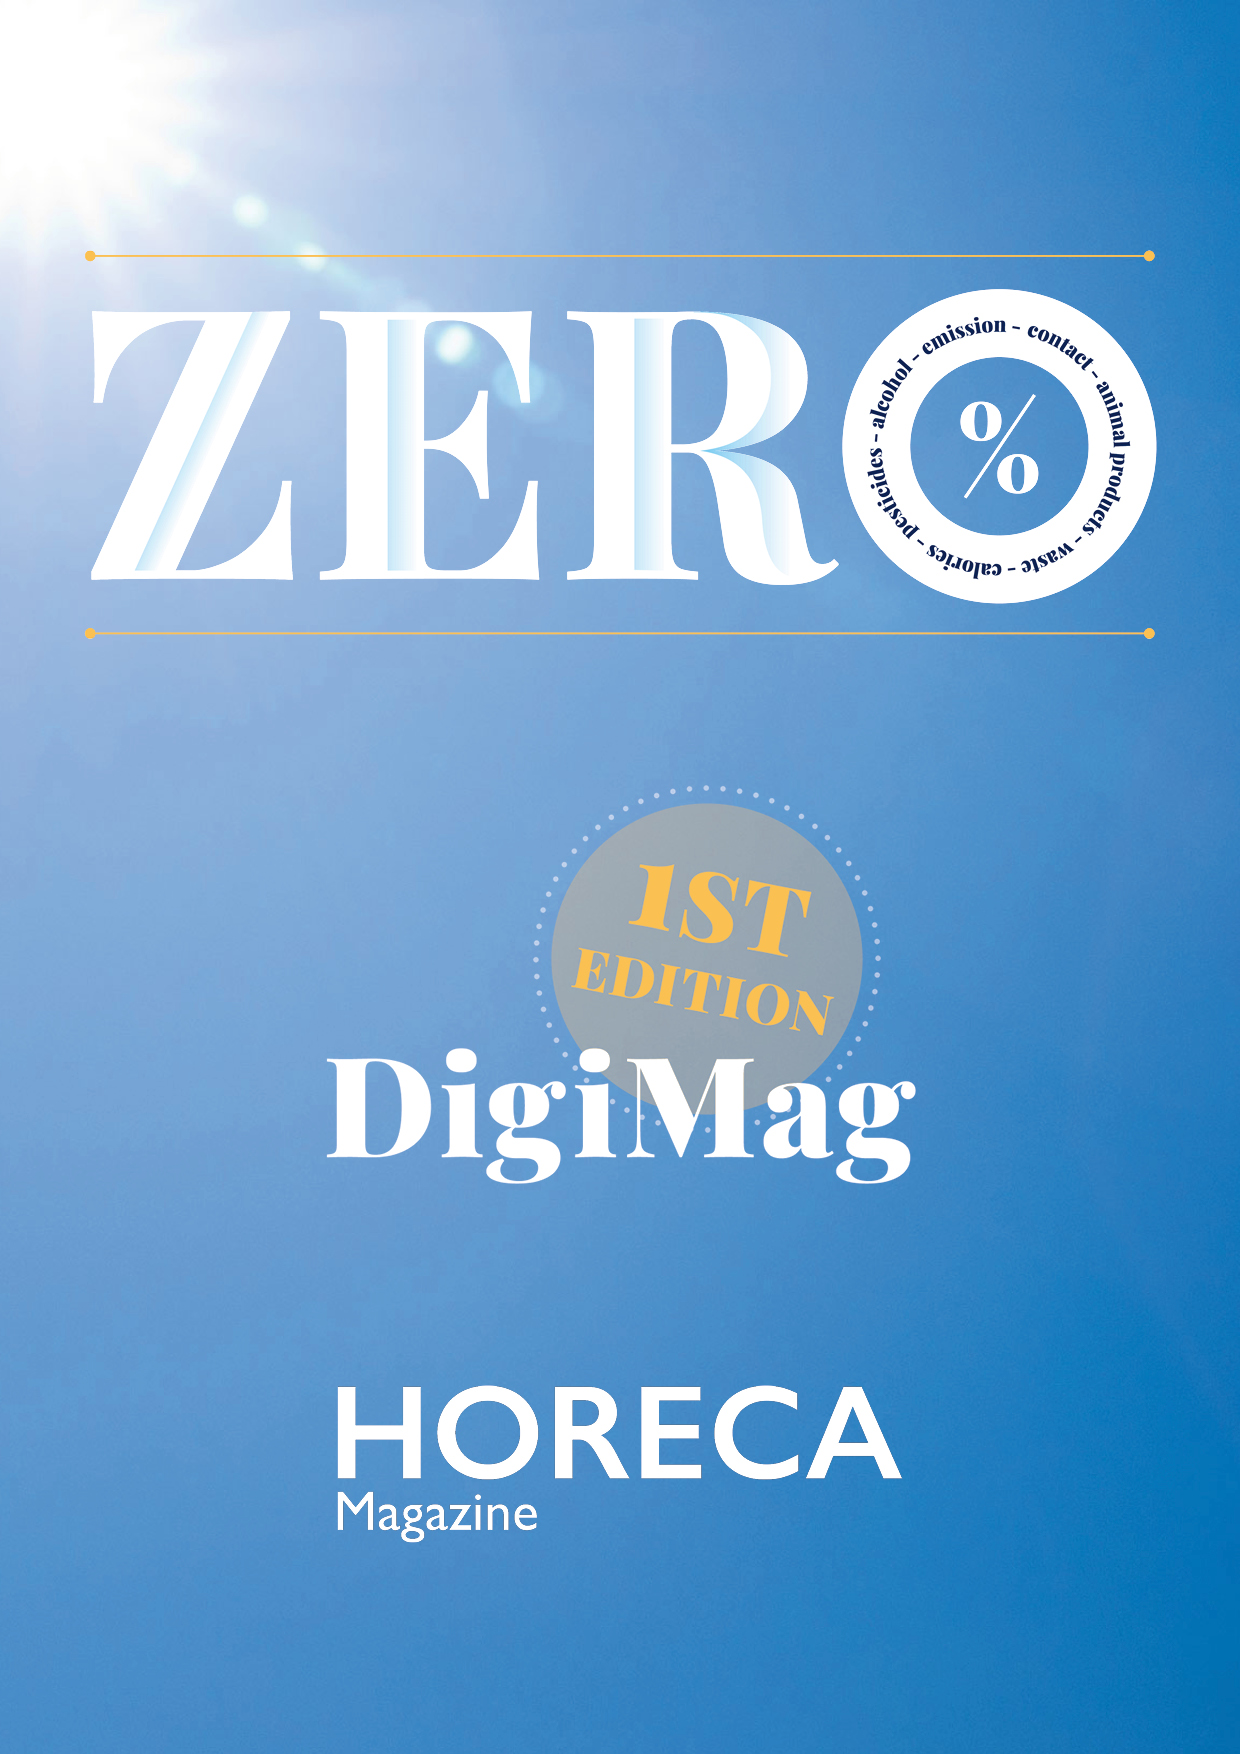 Horeca Magazine #204 Juli 2020